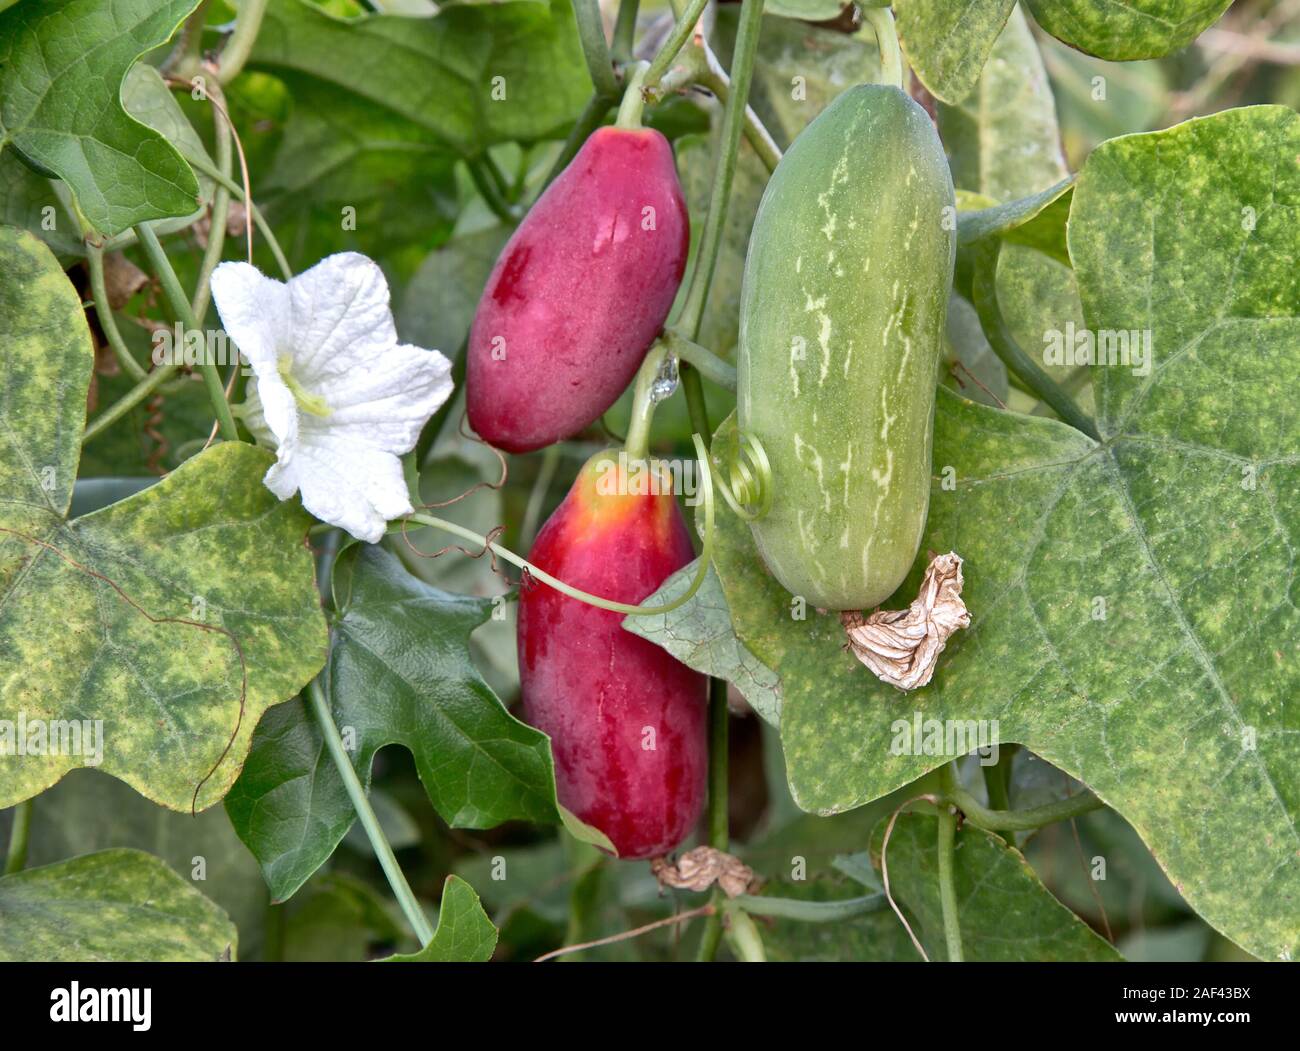 "Tindora Coccinia grandis'-Escarlata fructificó Ivy tierra sobre la vid, nueva flor blanca, también conocida como calabaza escarlata, Tailandés espinaca & Korai. Foto de stock